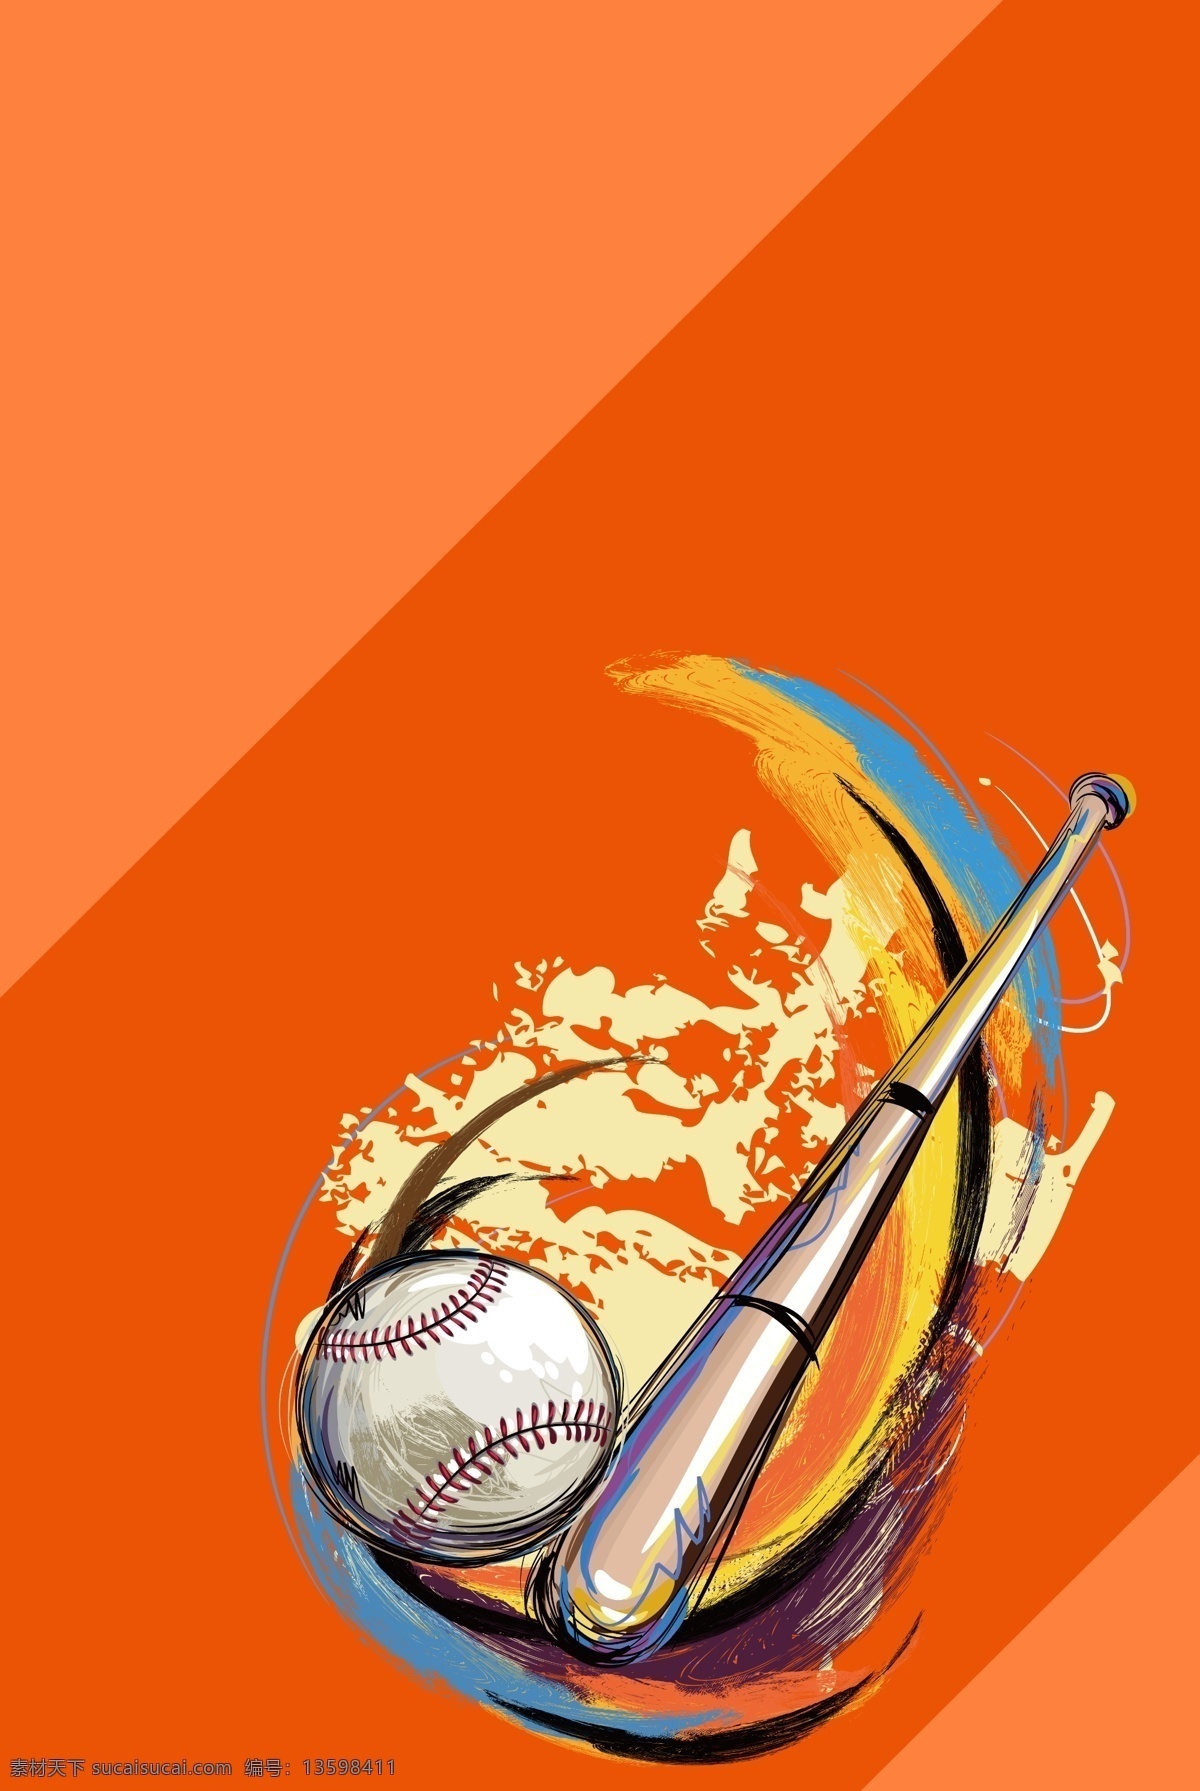 团队 活动 棒球 娱乐 插画 宣传 背景 团队活动背景 棒球背景 娱乐背景 插画背景 宣传背景